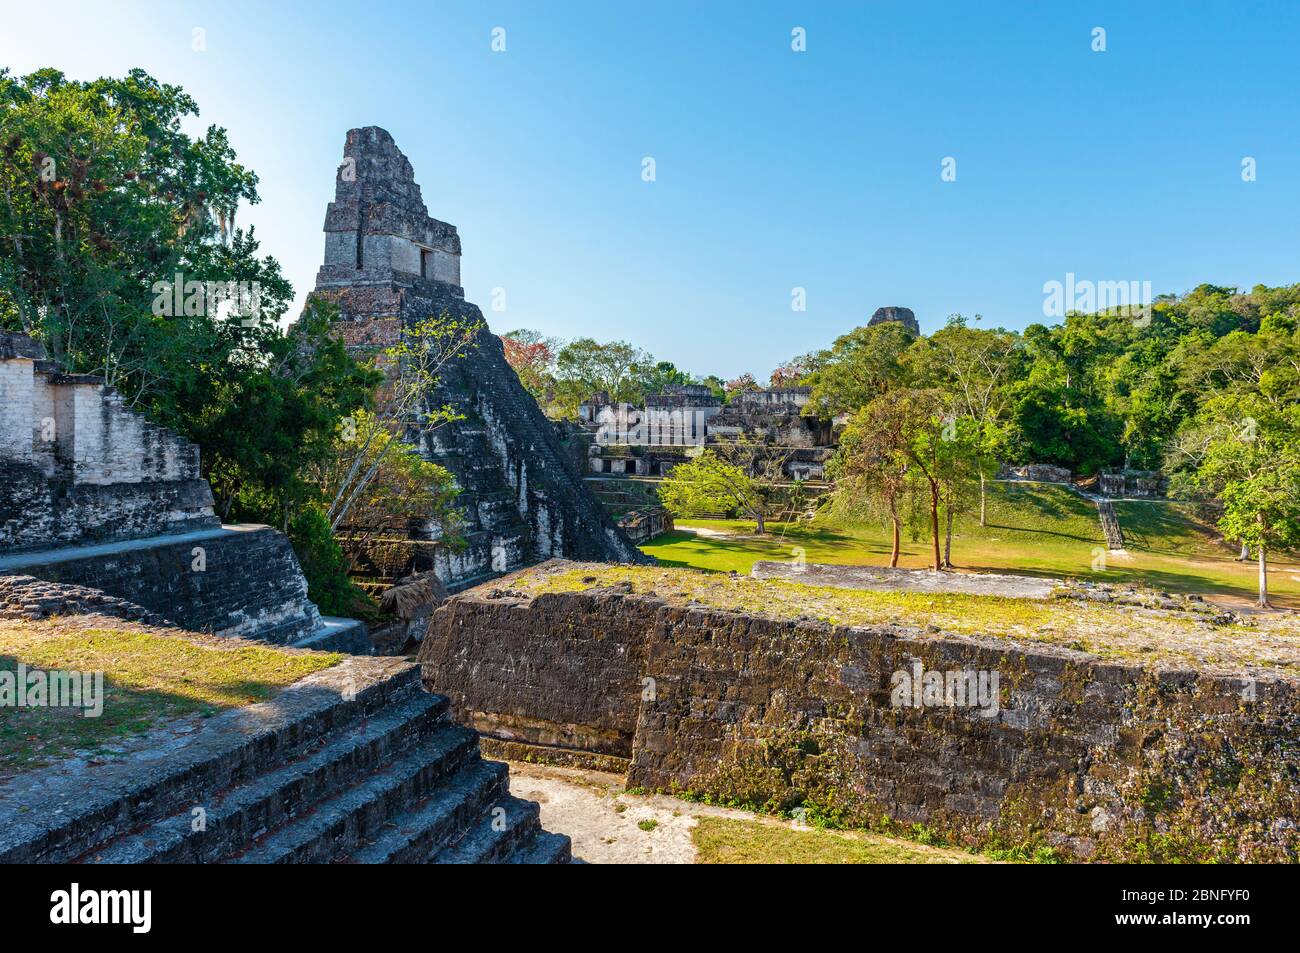 Place principale du site archéologique maya de Tikal avec Temple I ou Temple de la Grande Pyramide Jaguar à gauche, Forêt tropicale de Peten, Guatemala. Banque D'Images